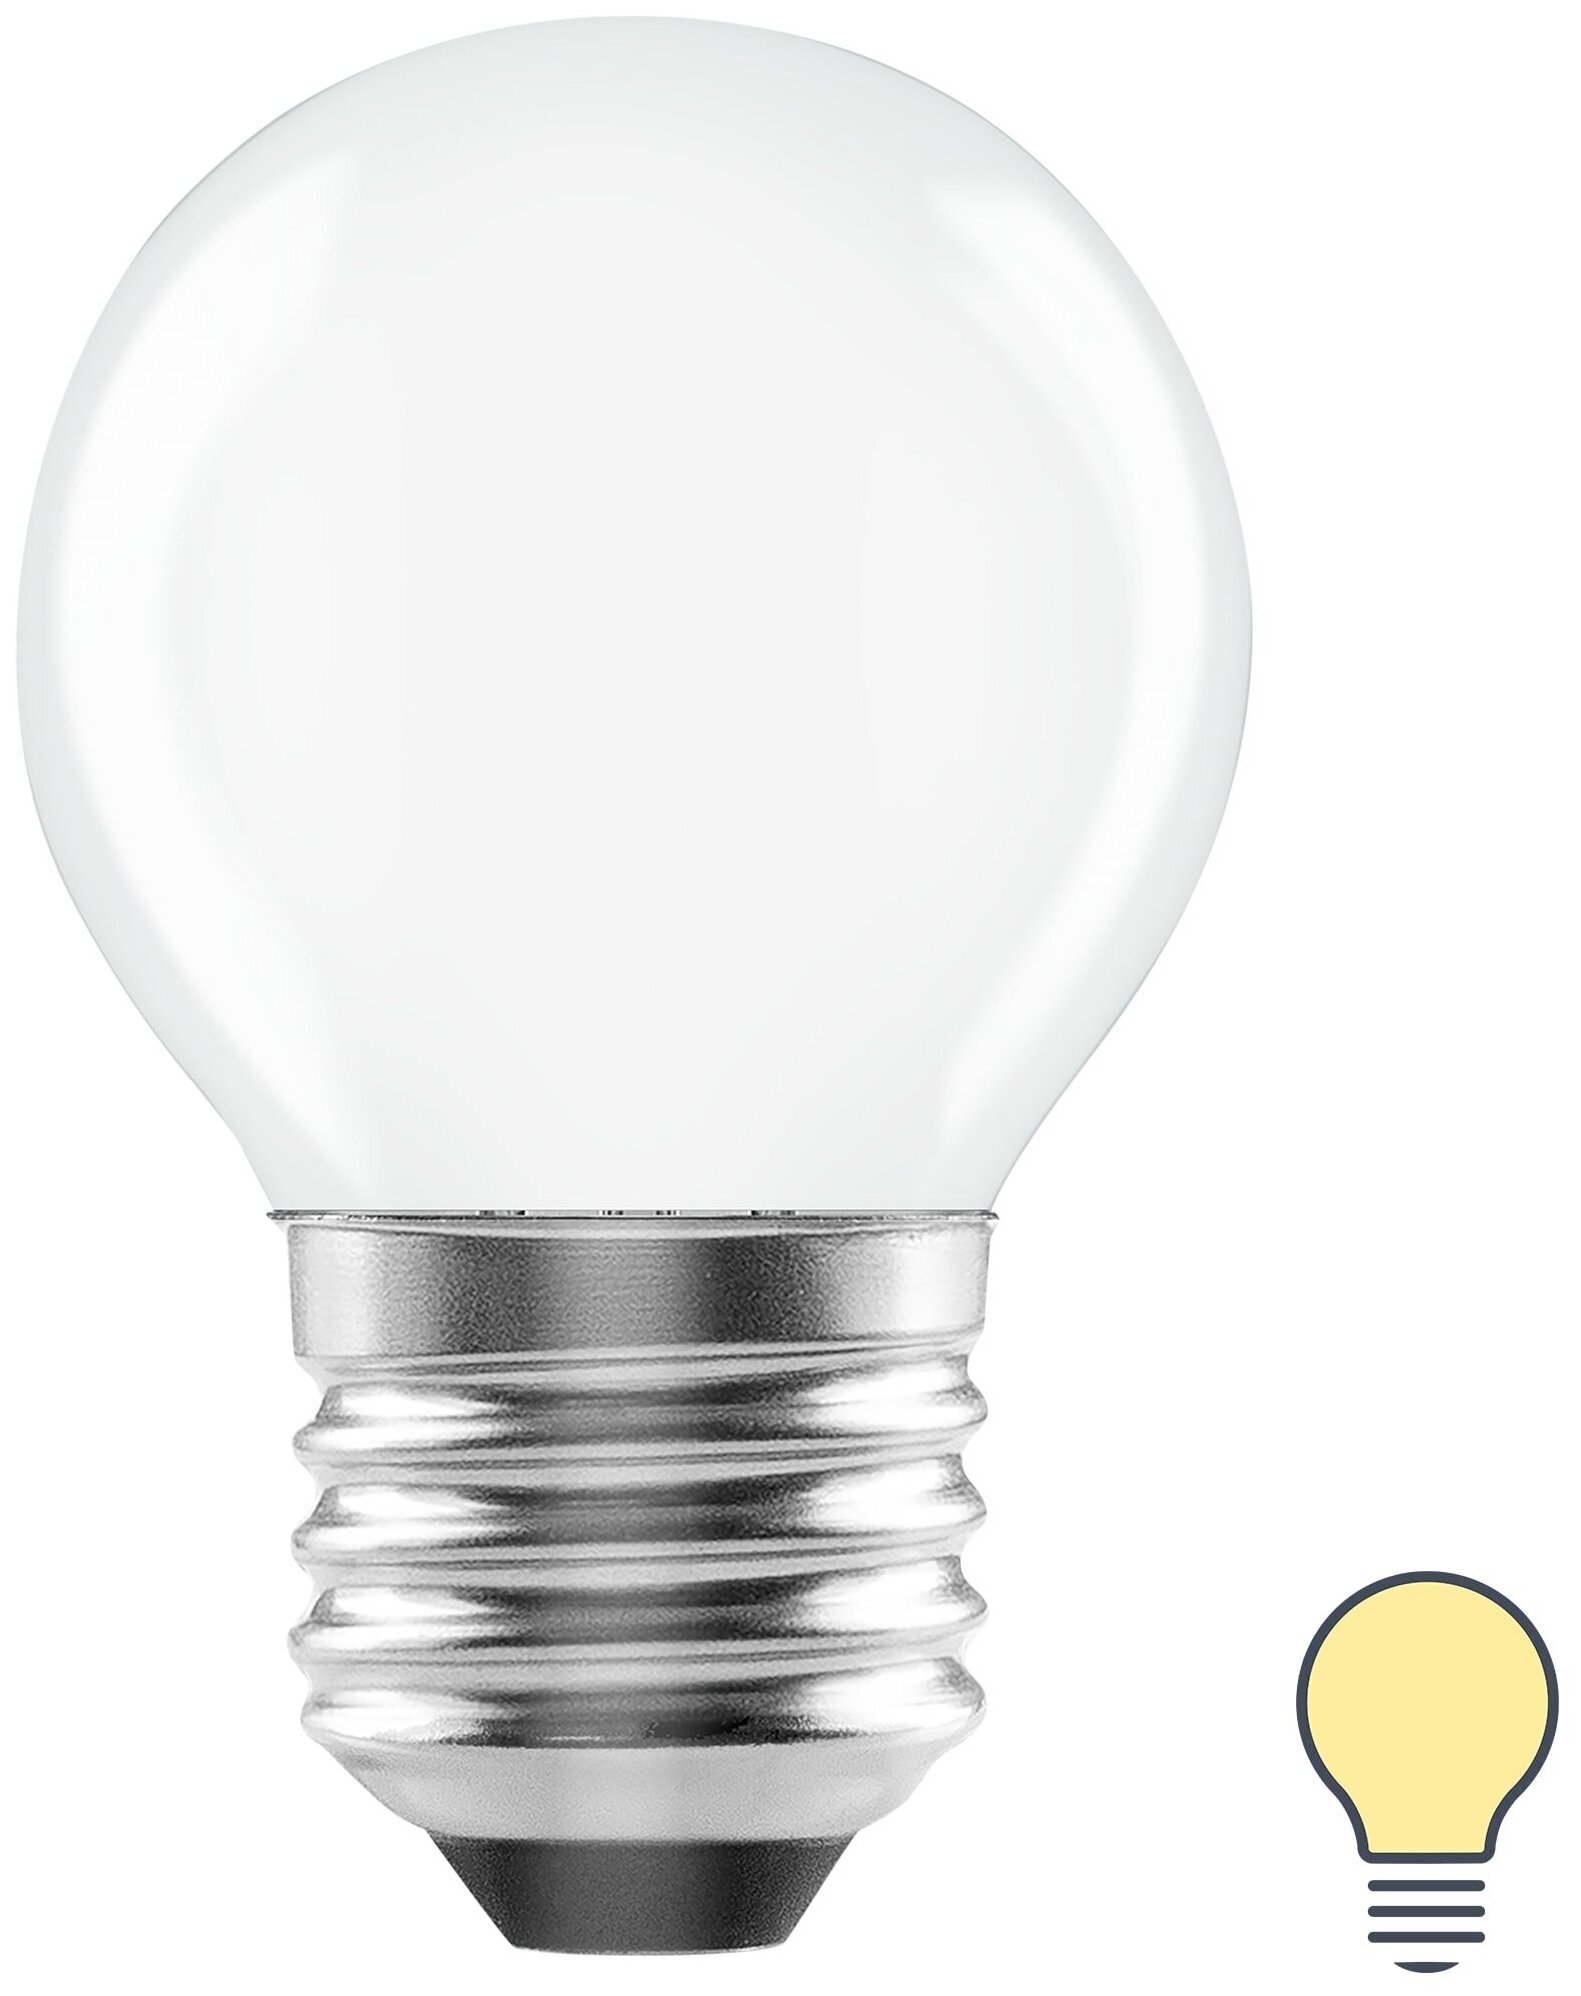 Лампа светодиодная Lexman E27 220-240 В 4 Вт шар матовая 400 лм теплый белый свет. Набор из 2 шт.